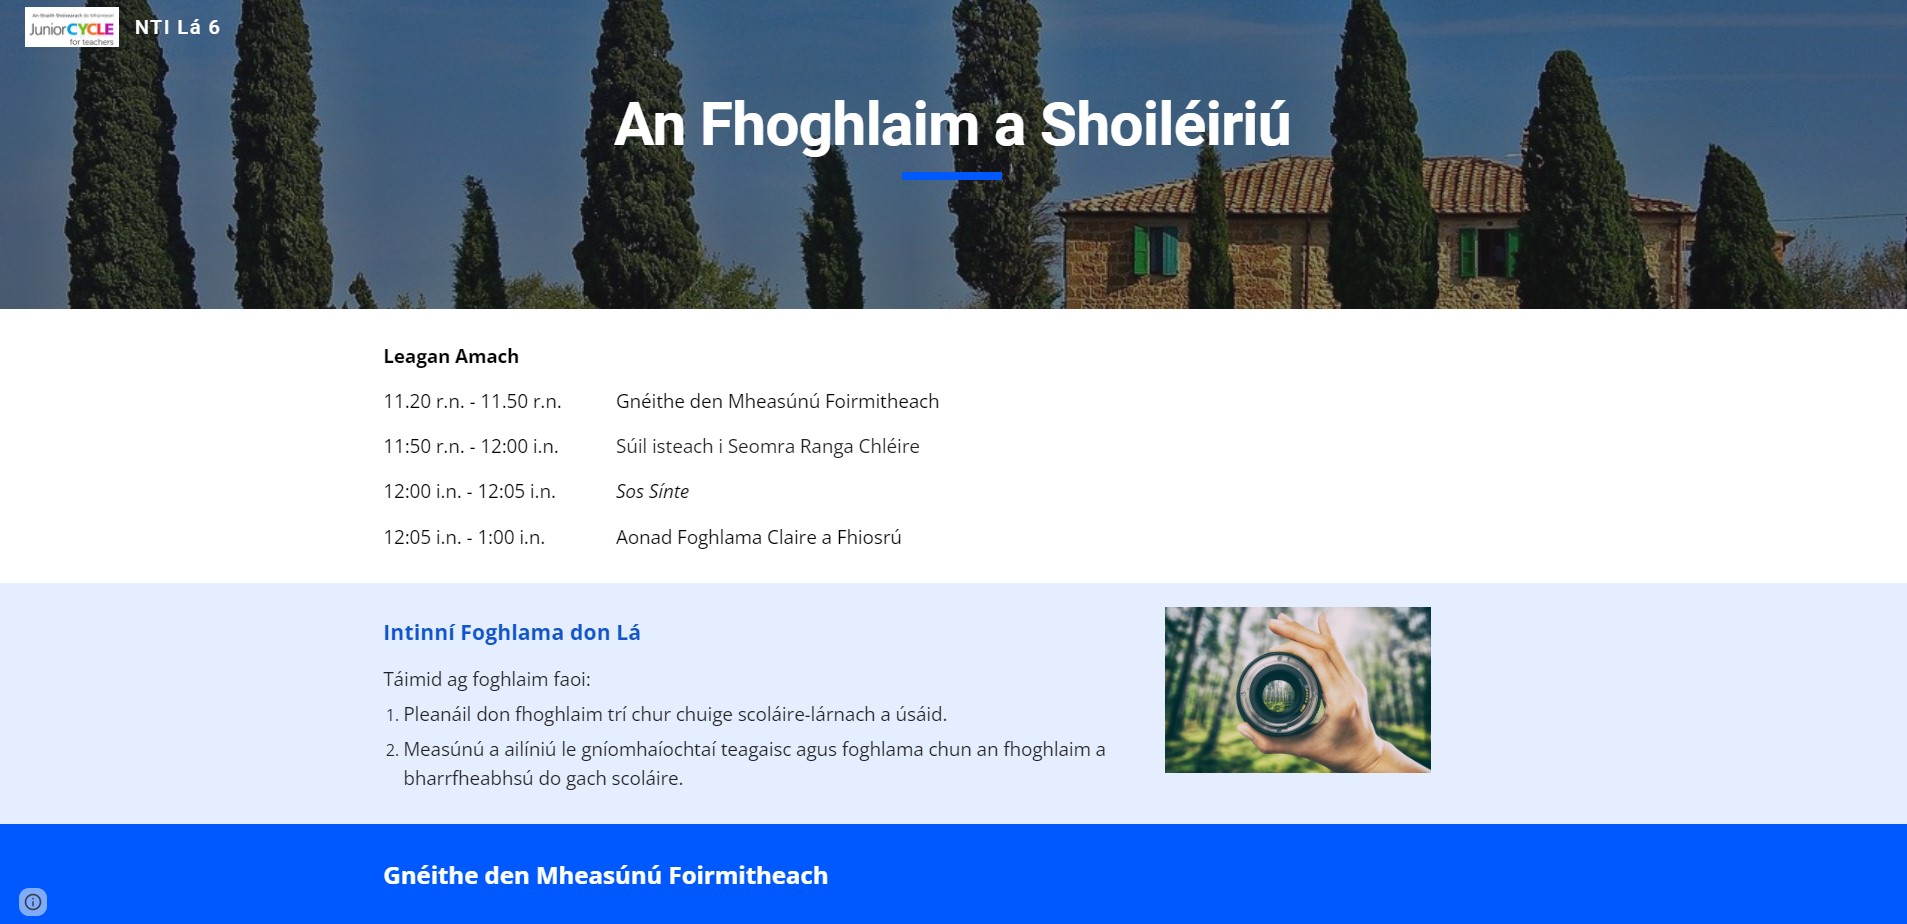 An Fhoghlaim a Shoiléiriú